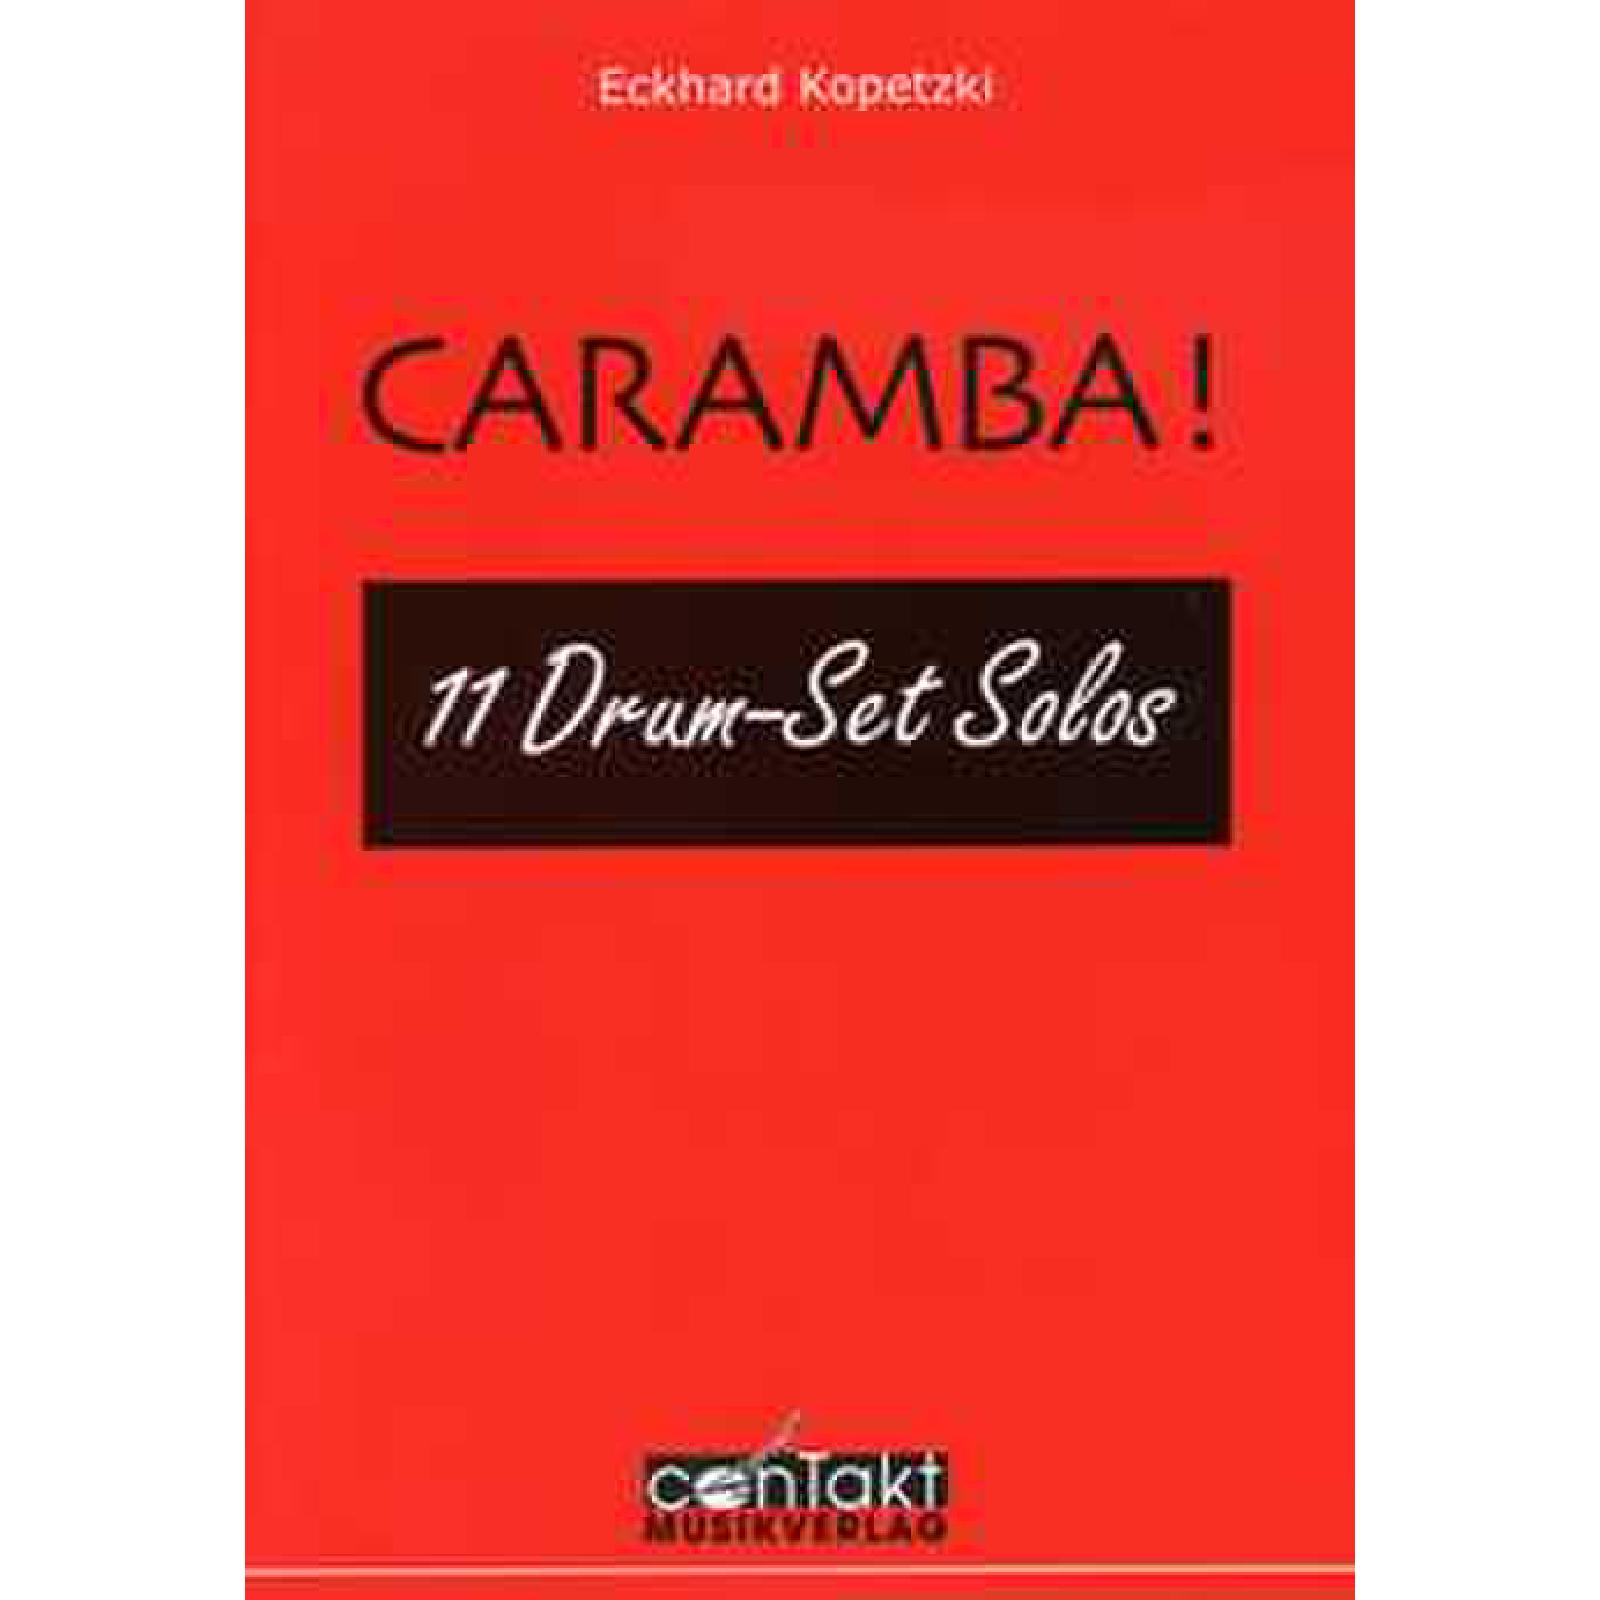 Caramba - 11 Drumset Solos, Kopetzki